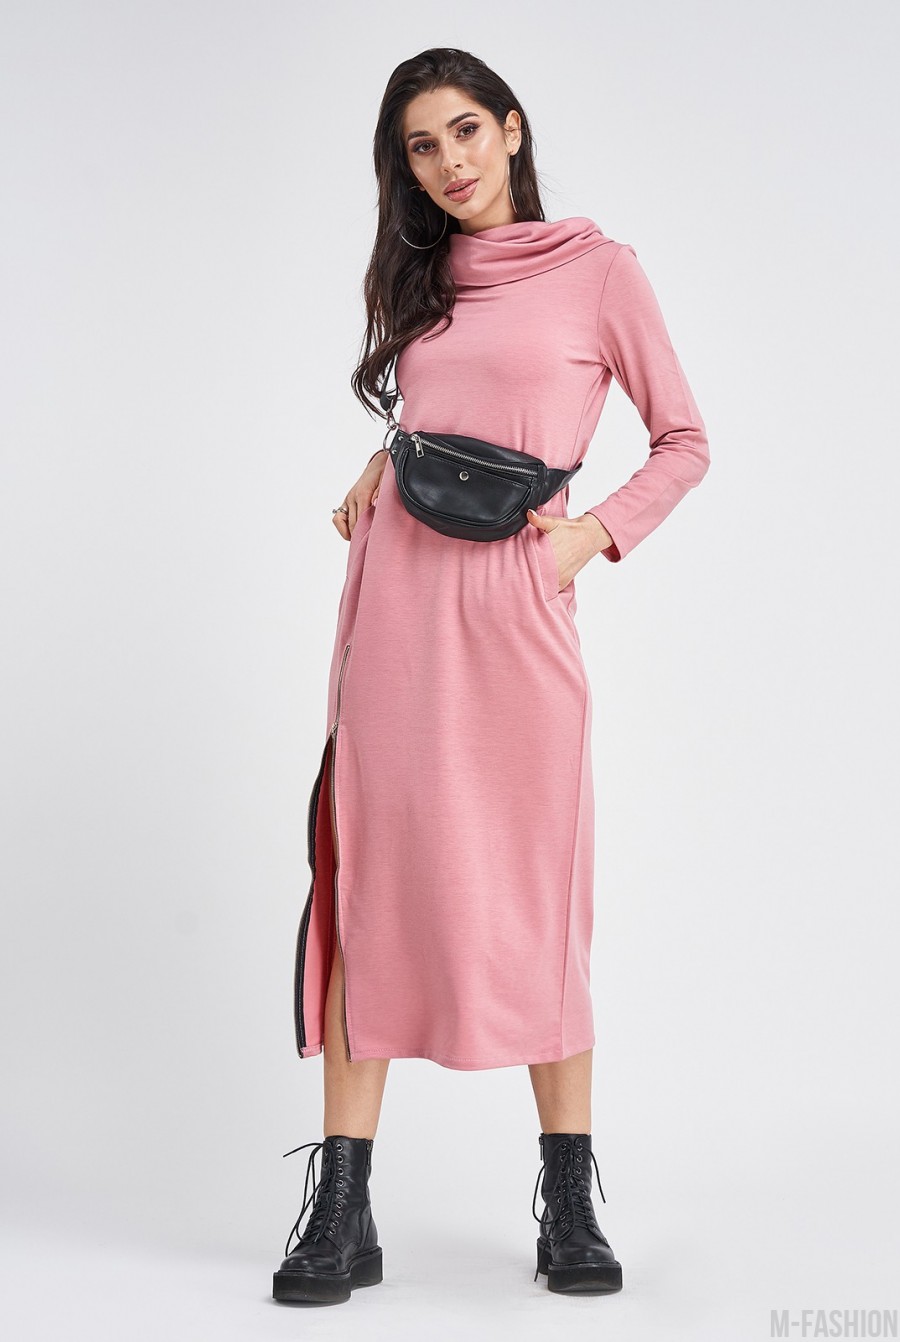 Удлиненное трикотажное розовое платье с боковой молнией - Фото 1